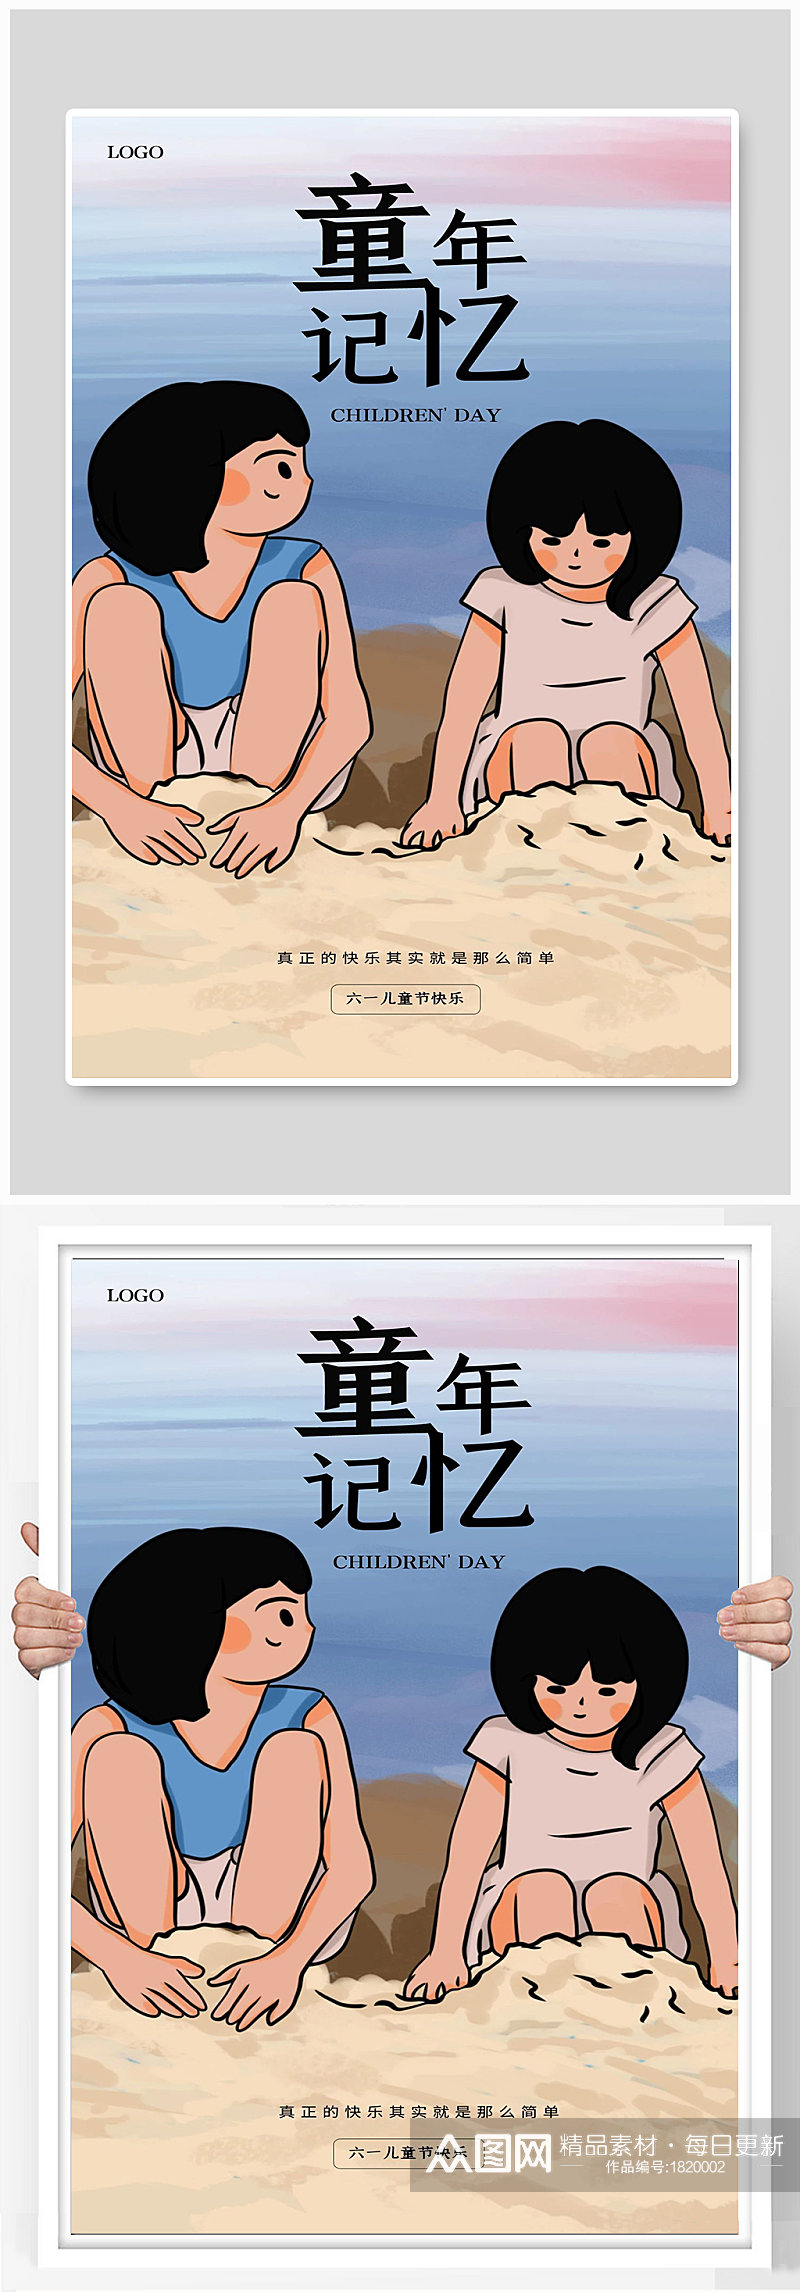 童年记忆海滩沙滩大海卡通小孩宣海报素材